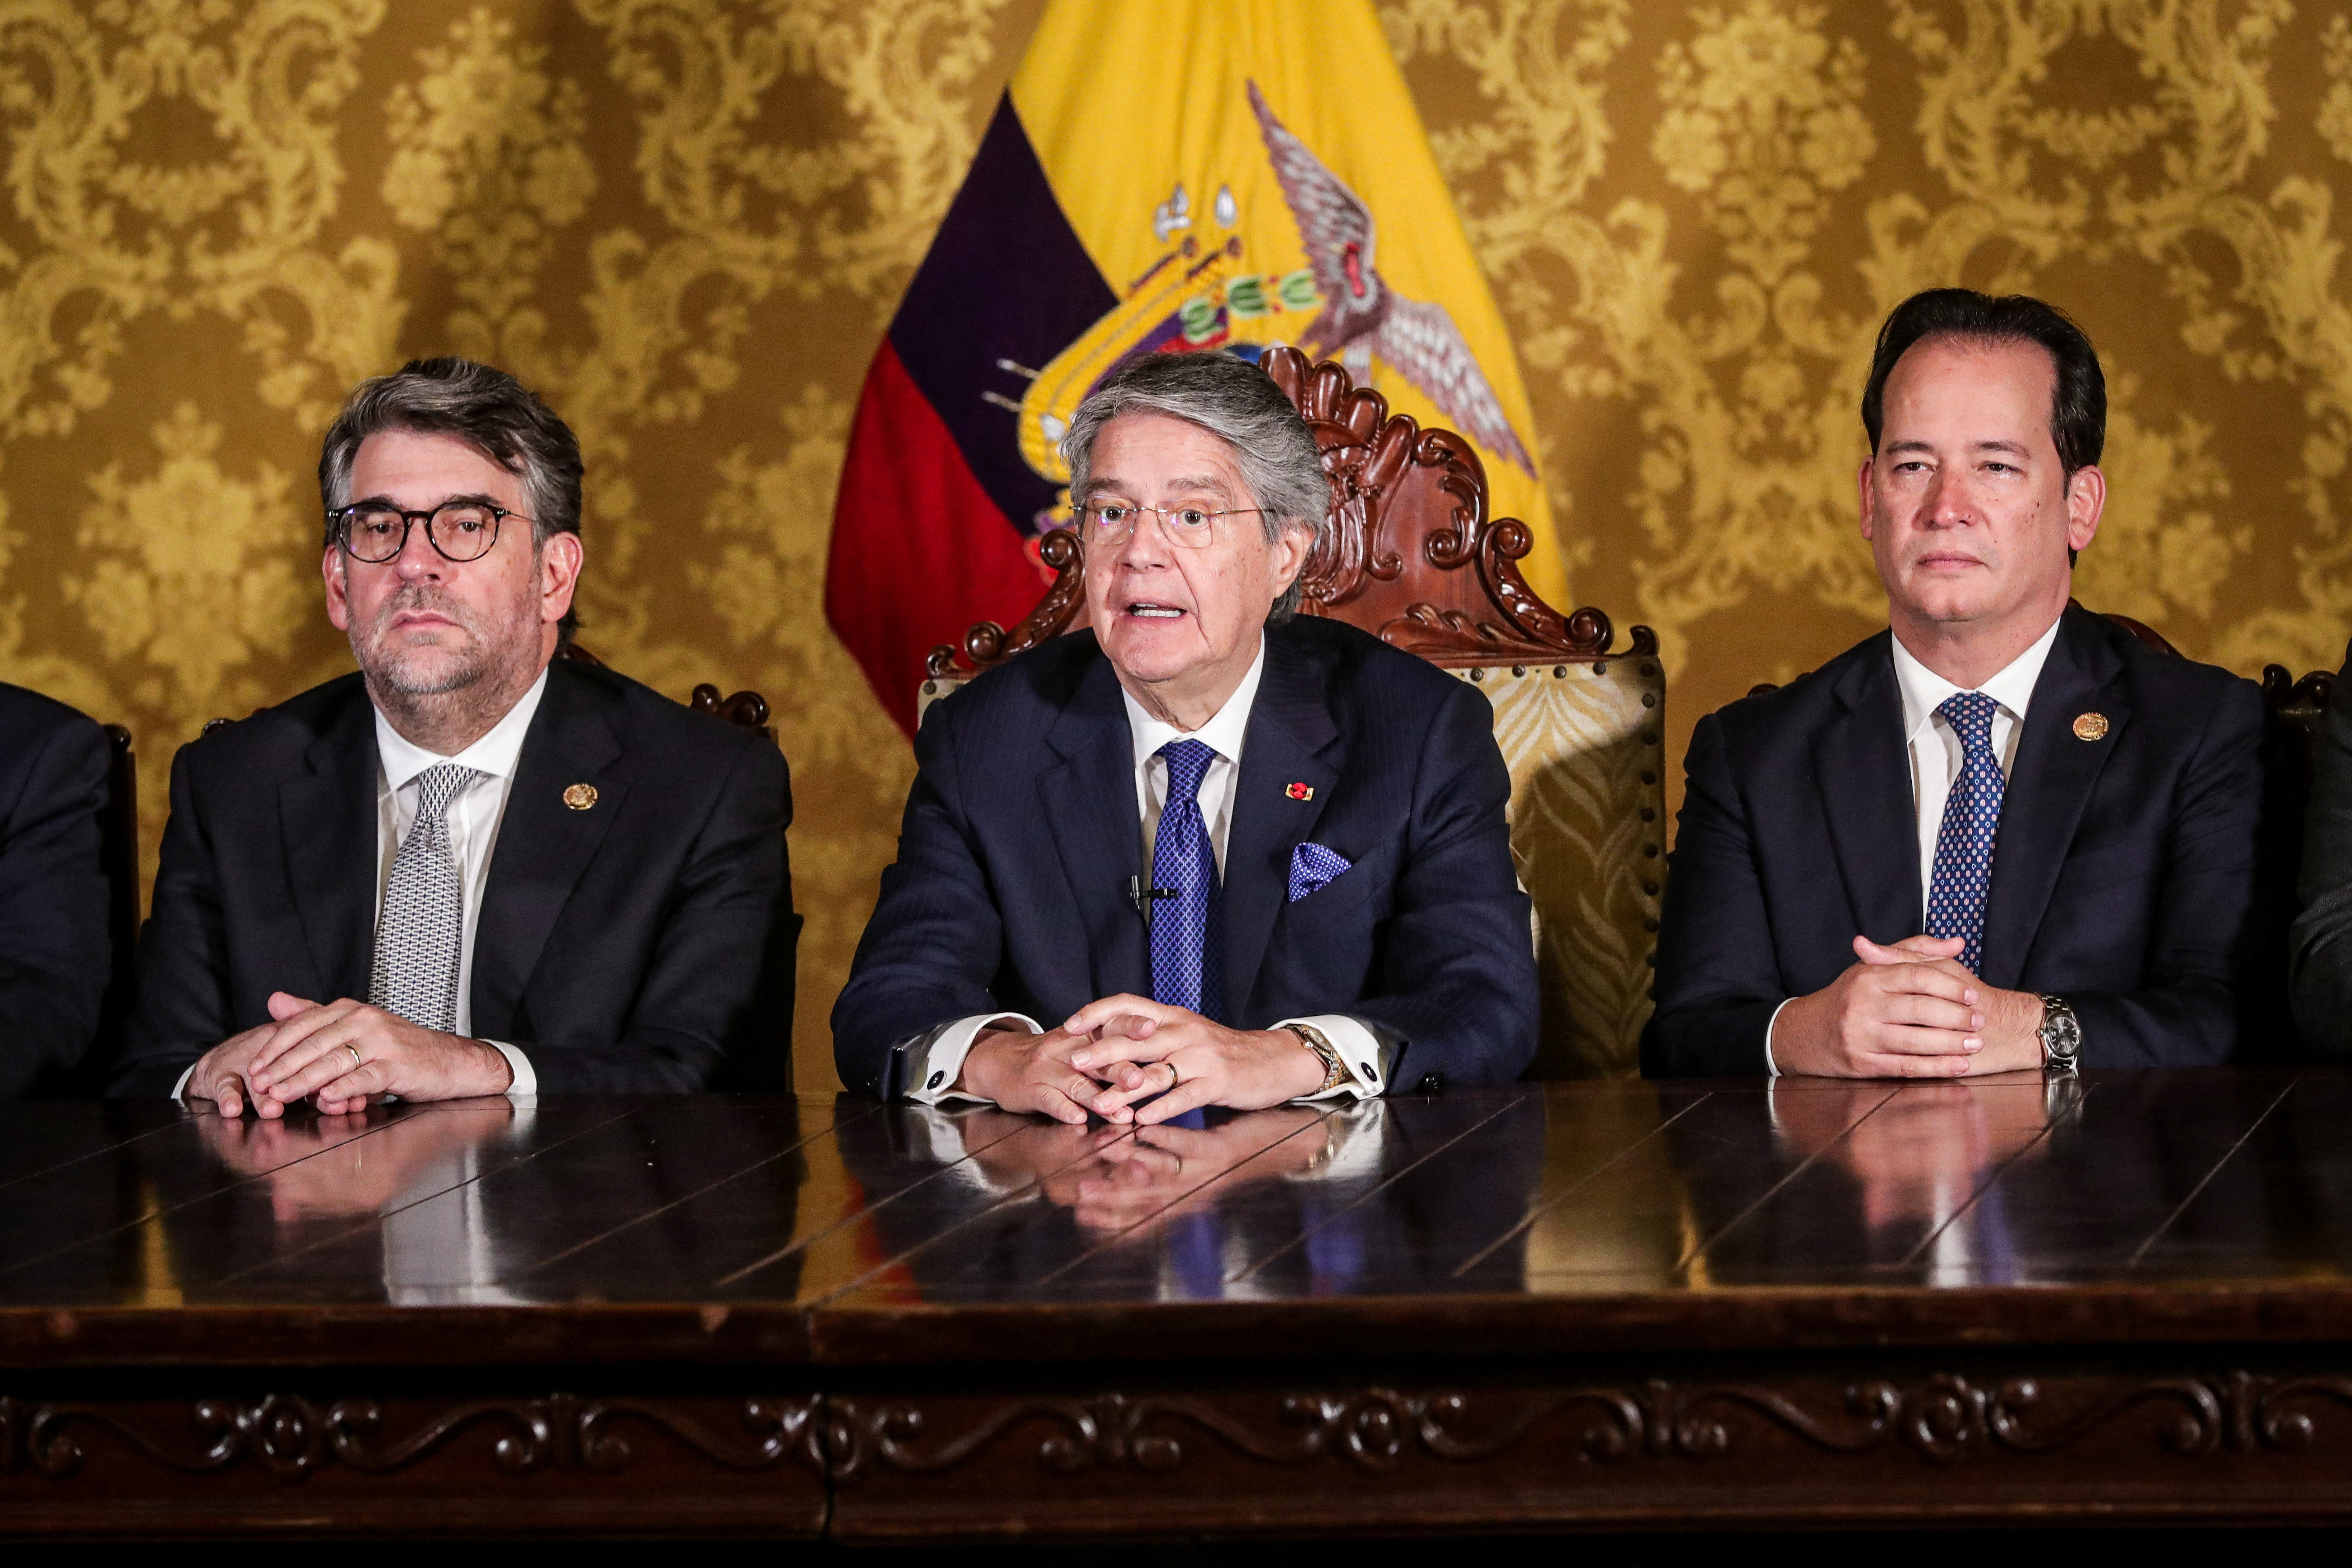 Estados Unidos aseguró que la disolución del congreso de Ecuador “no cambia” el vínculo entre los países